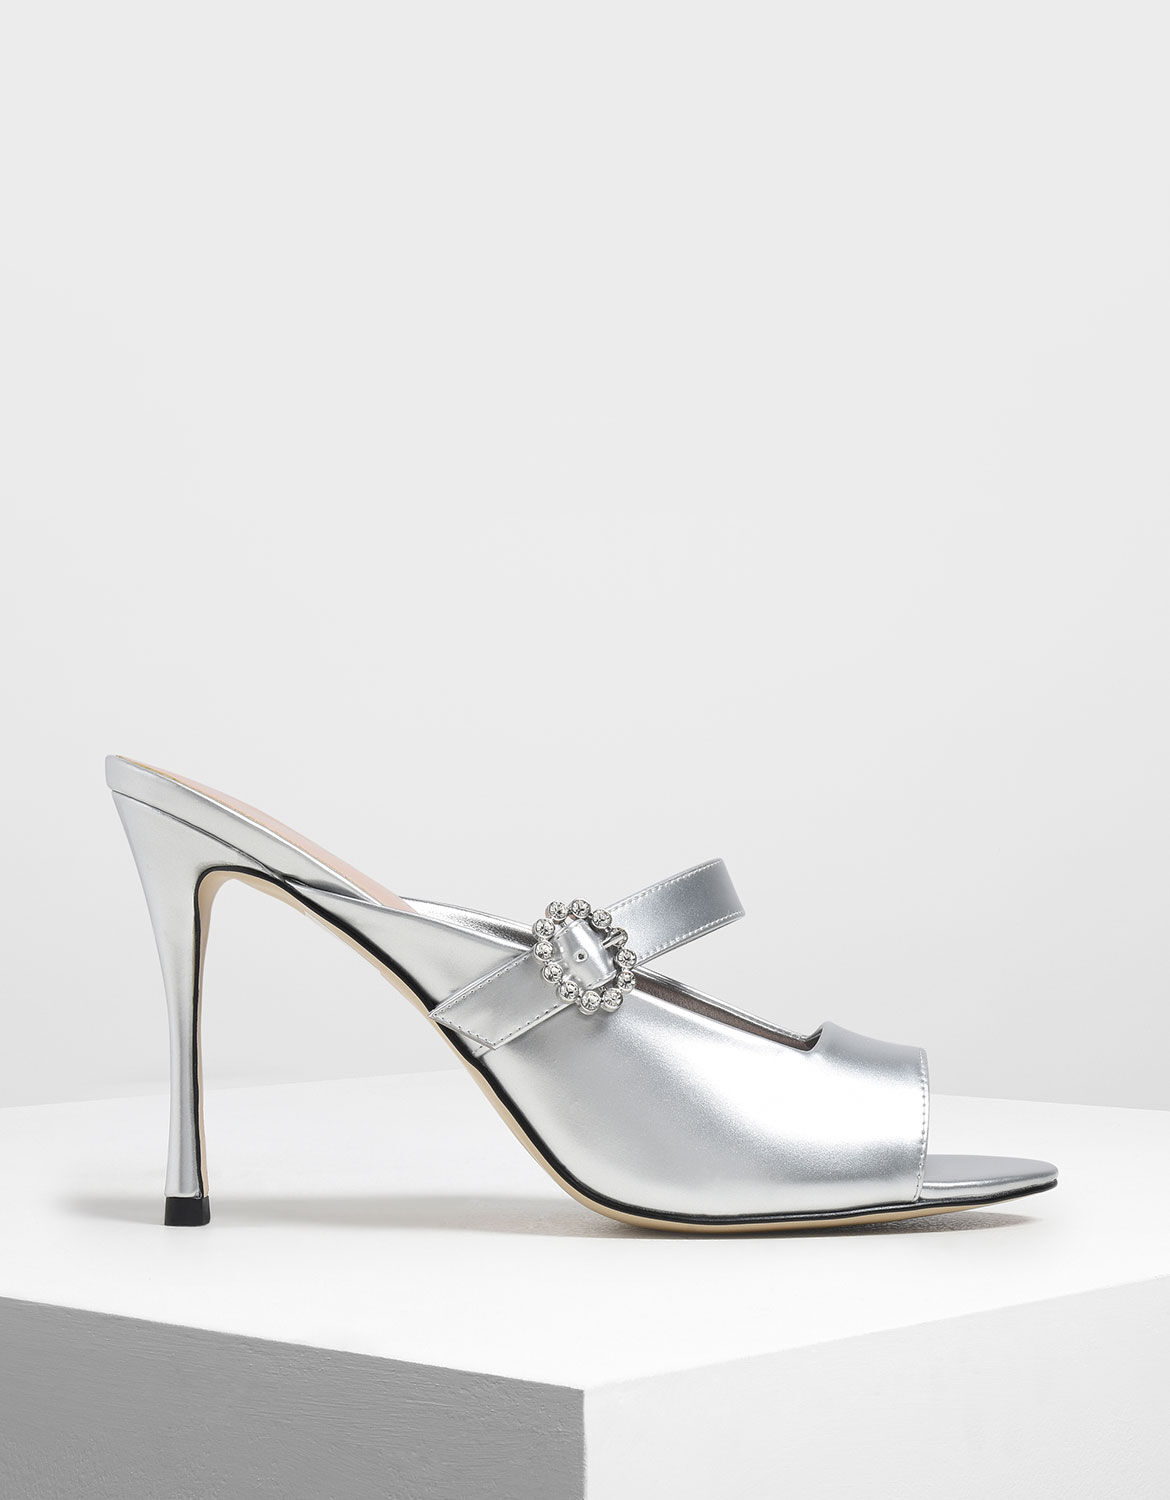 silver heels embellished